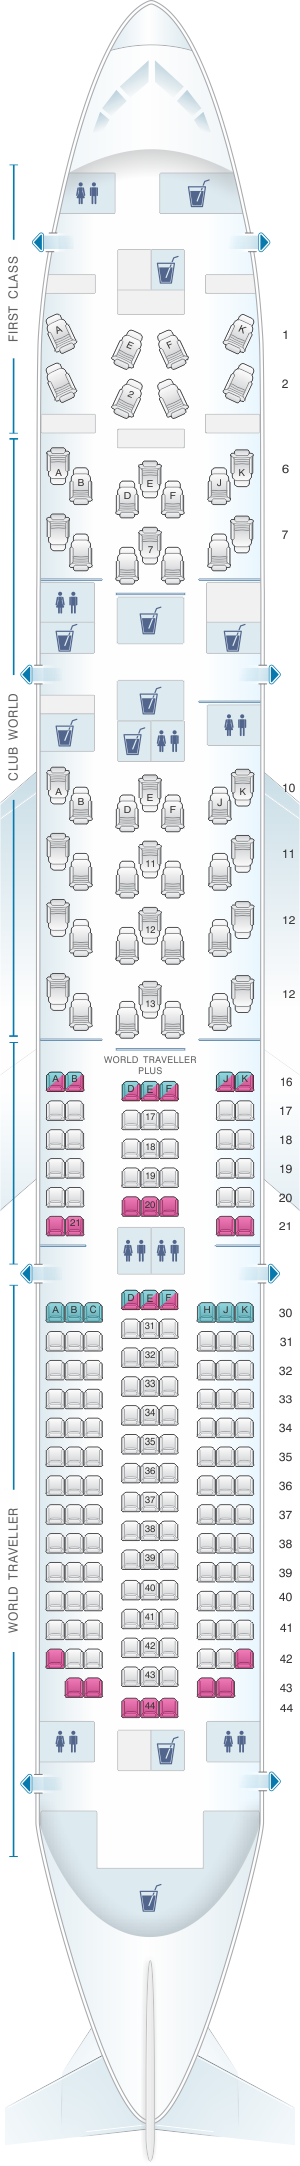 seat assignments british airways